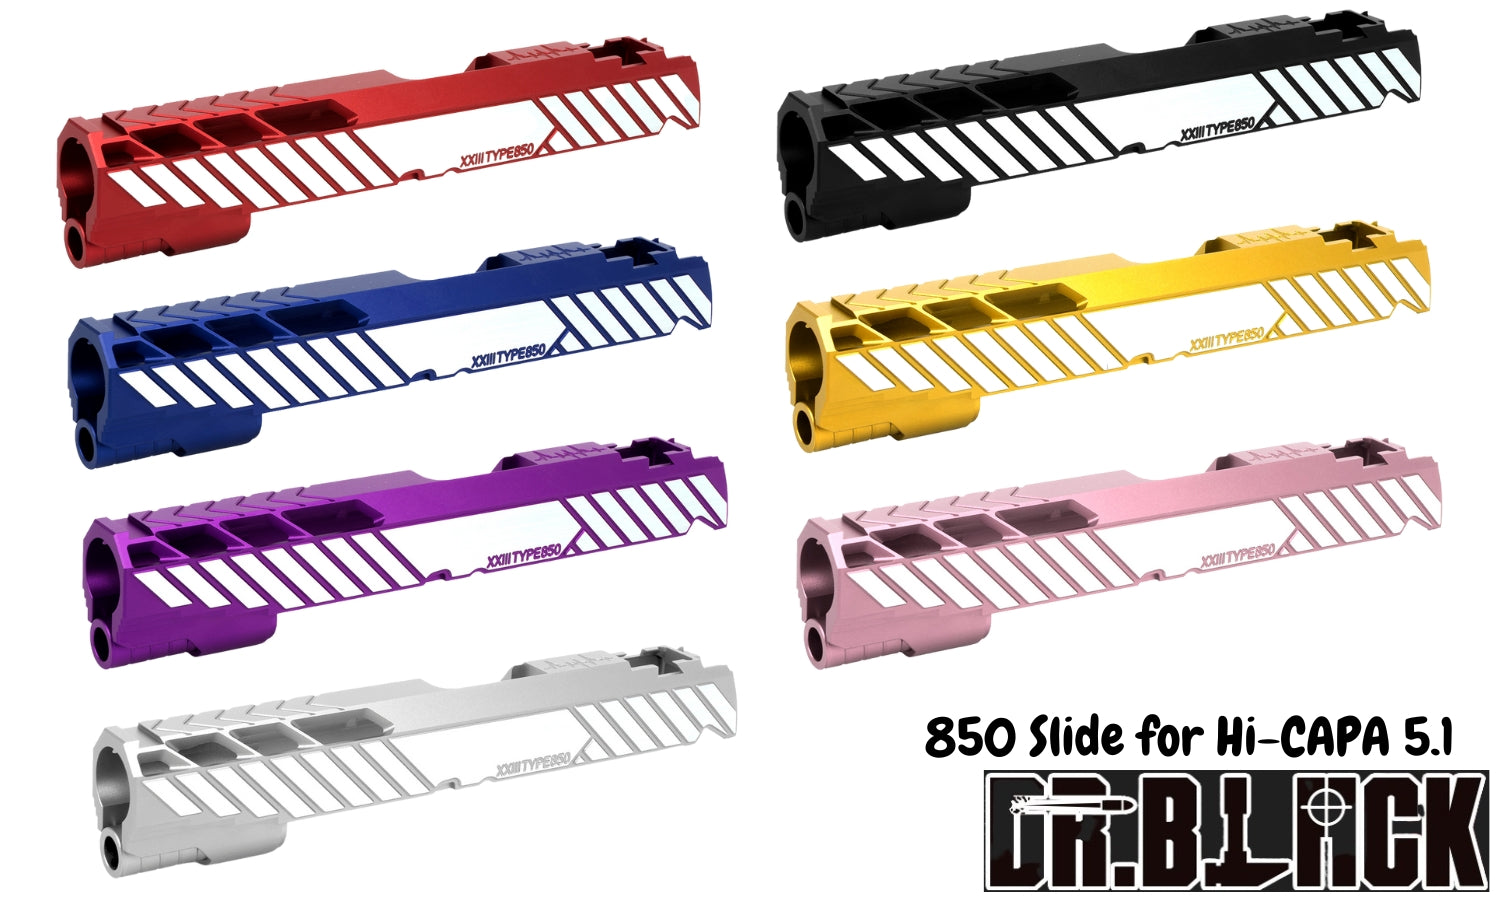 Dr. Black 850 Slide for Hi-CAPA 5.1 (7 colors)